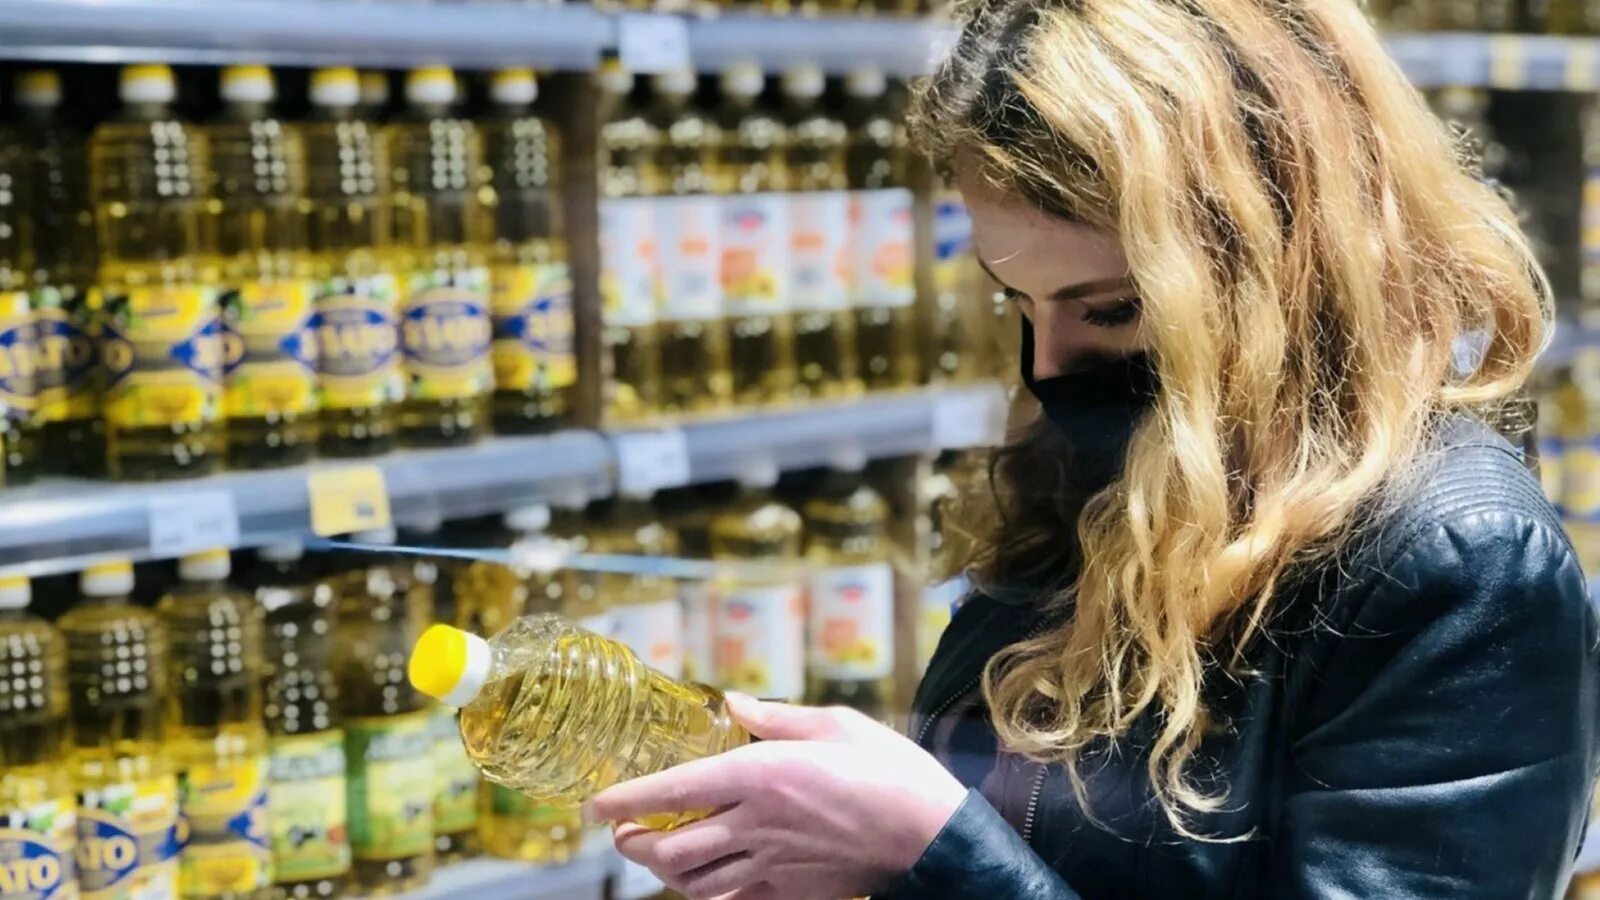 Масло подсолнечное. Подсолнечное масло на прилавке магазина. Девушка в подсолнечном масле. Белорусские продукты. Подсолнечное масло.